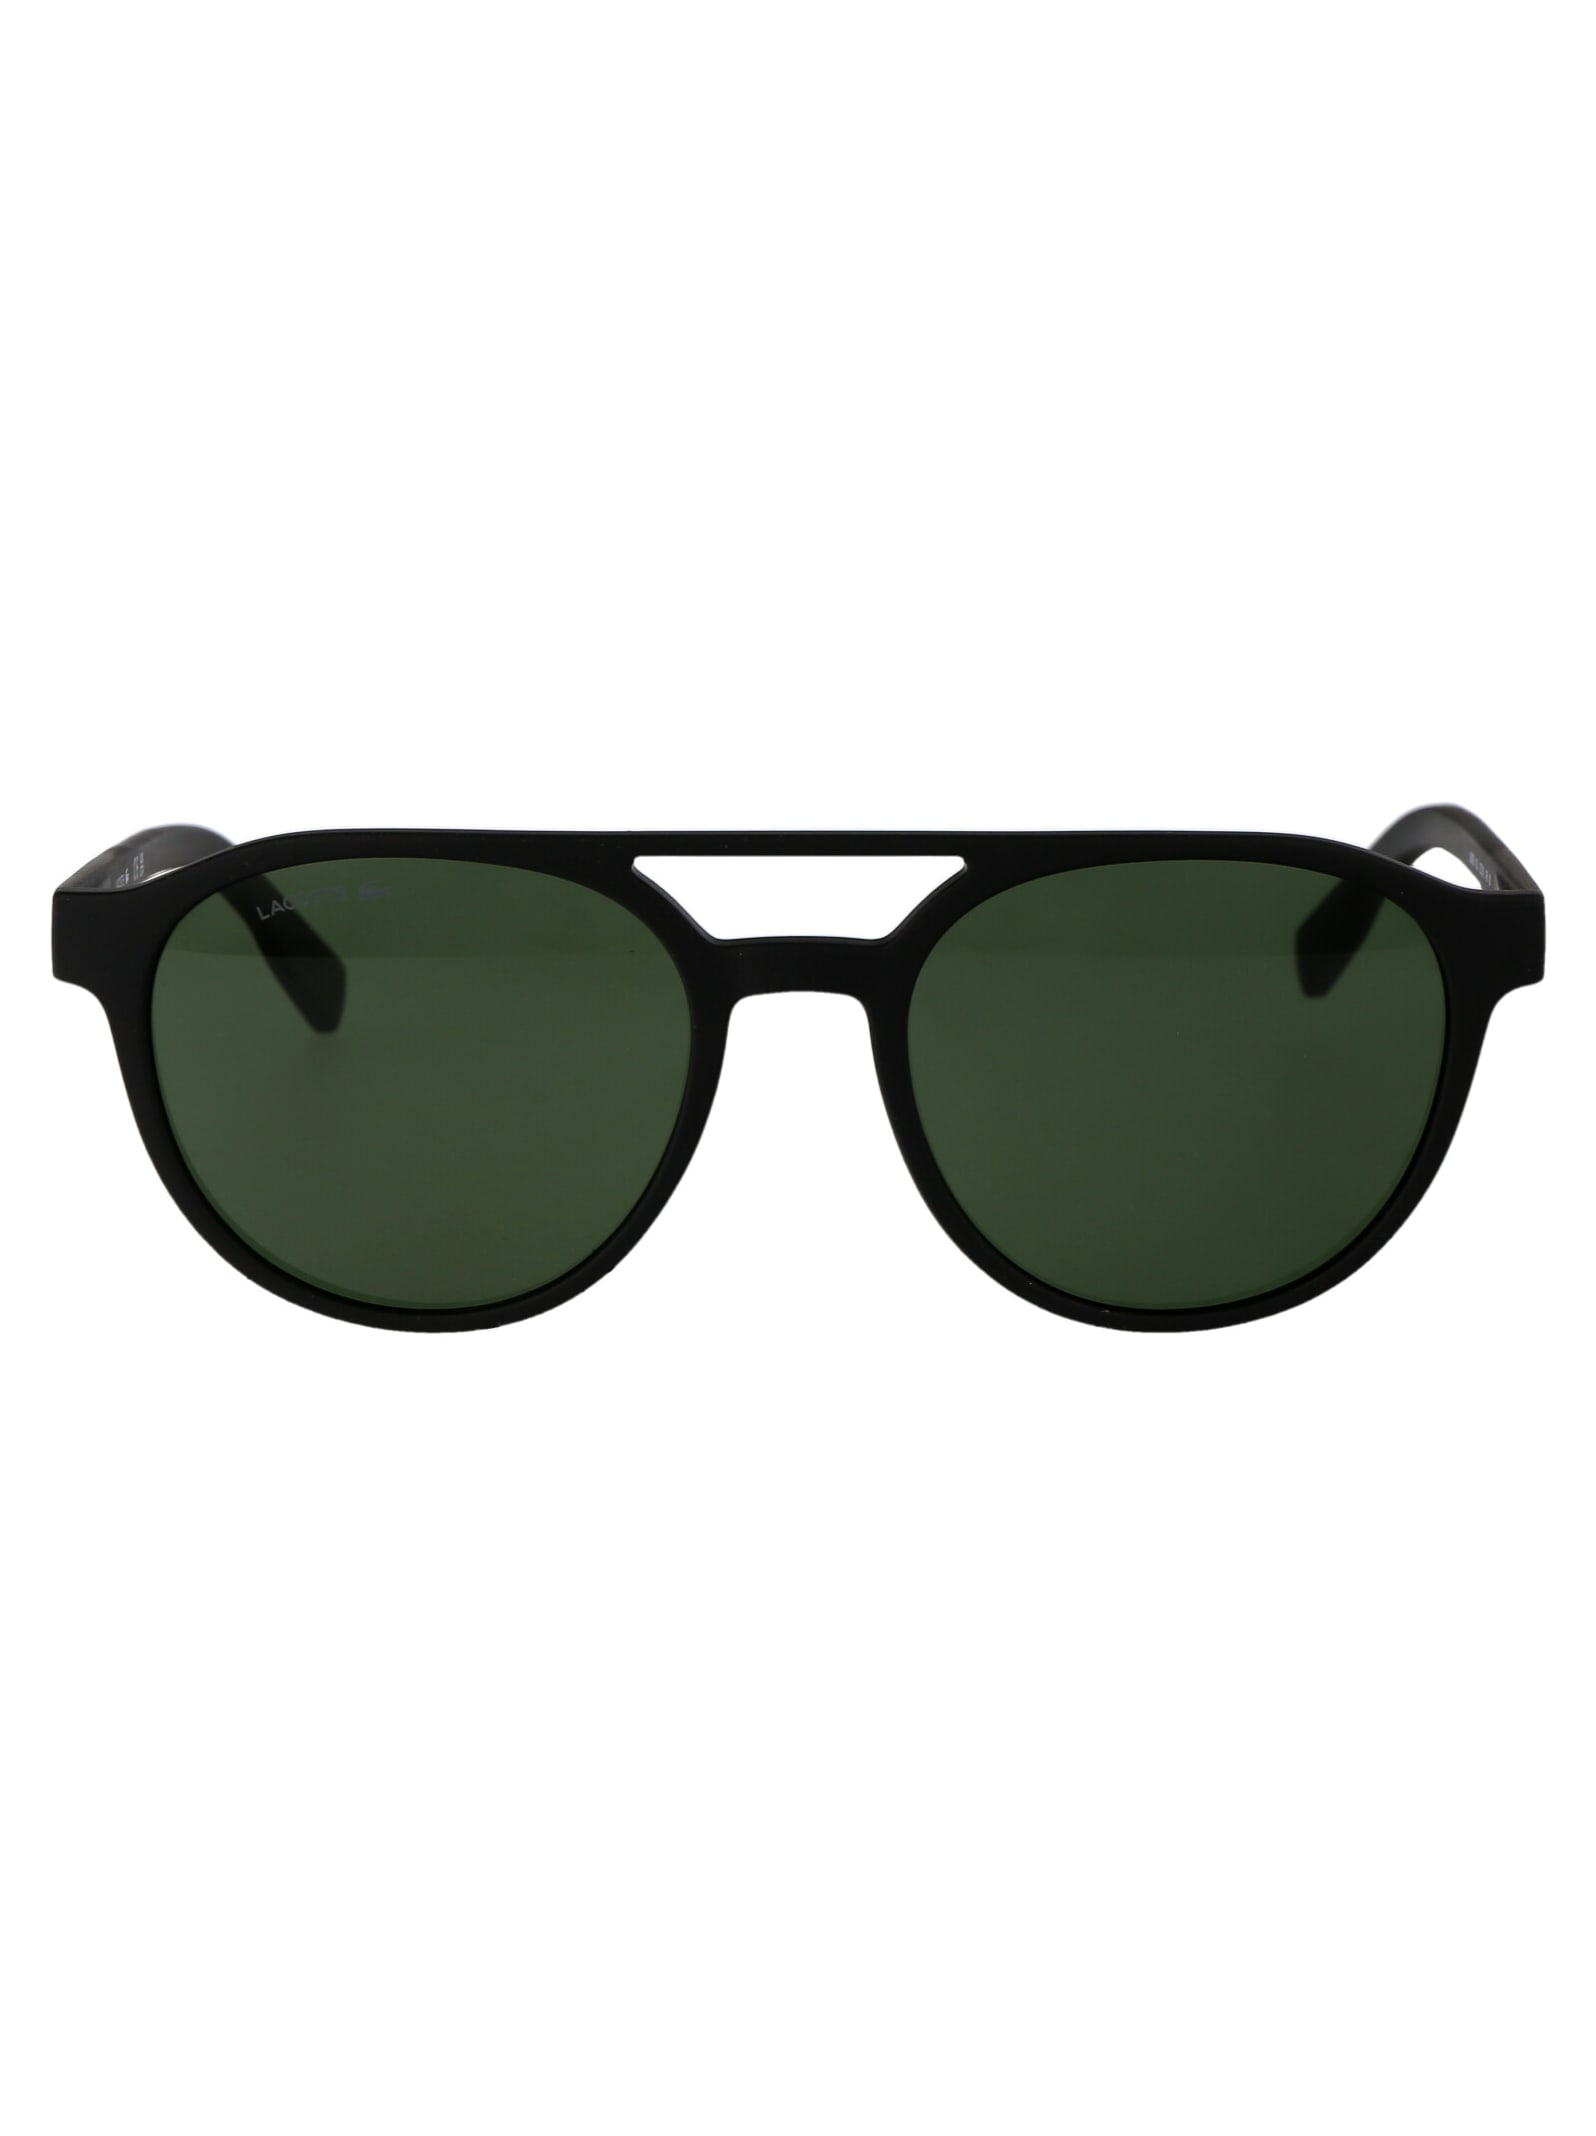 L6008s Sunglasses